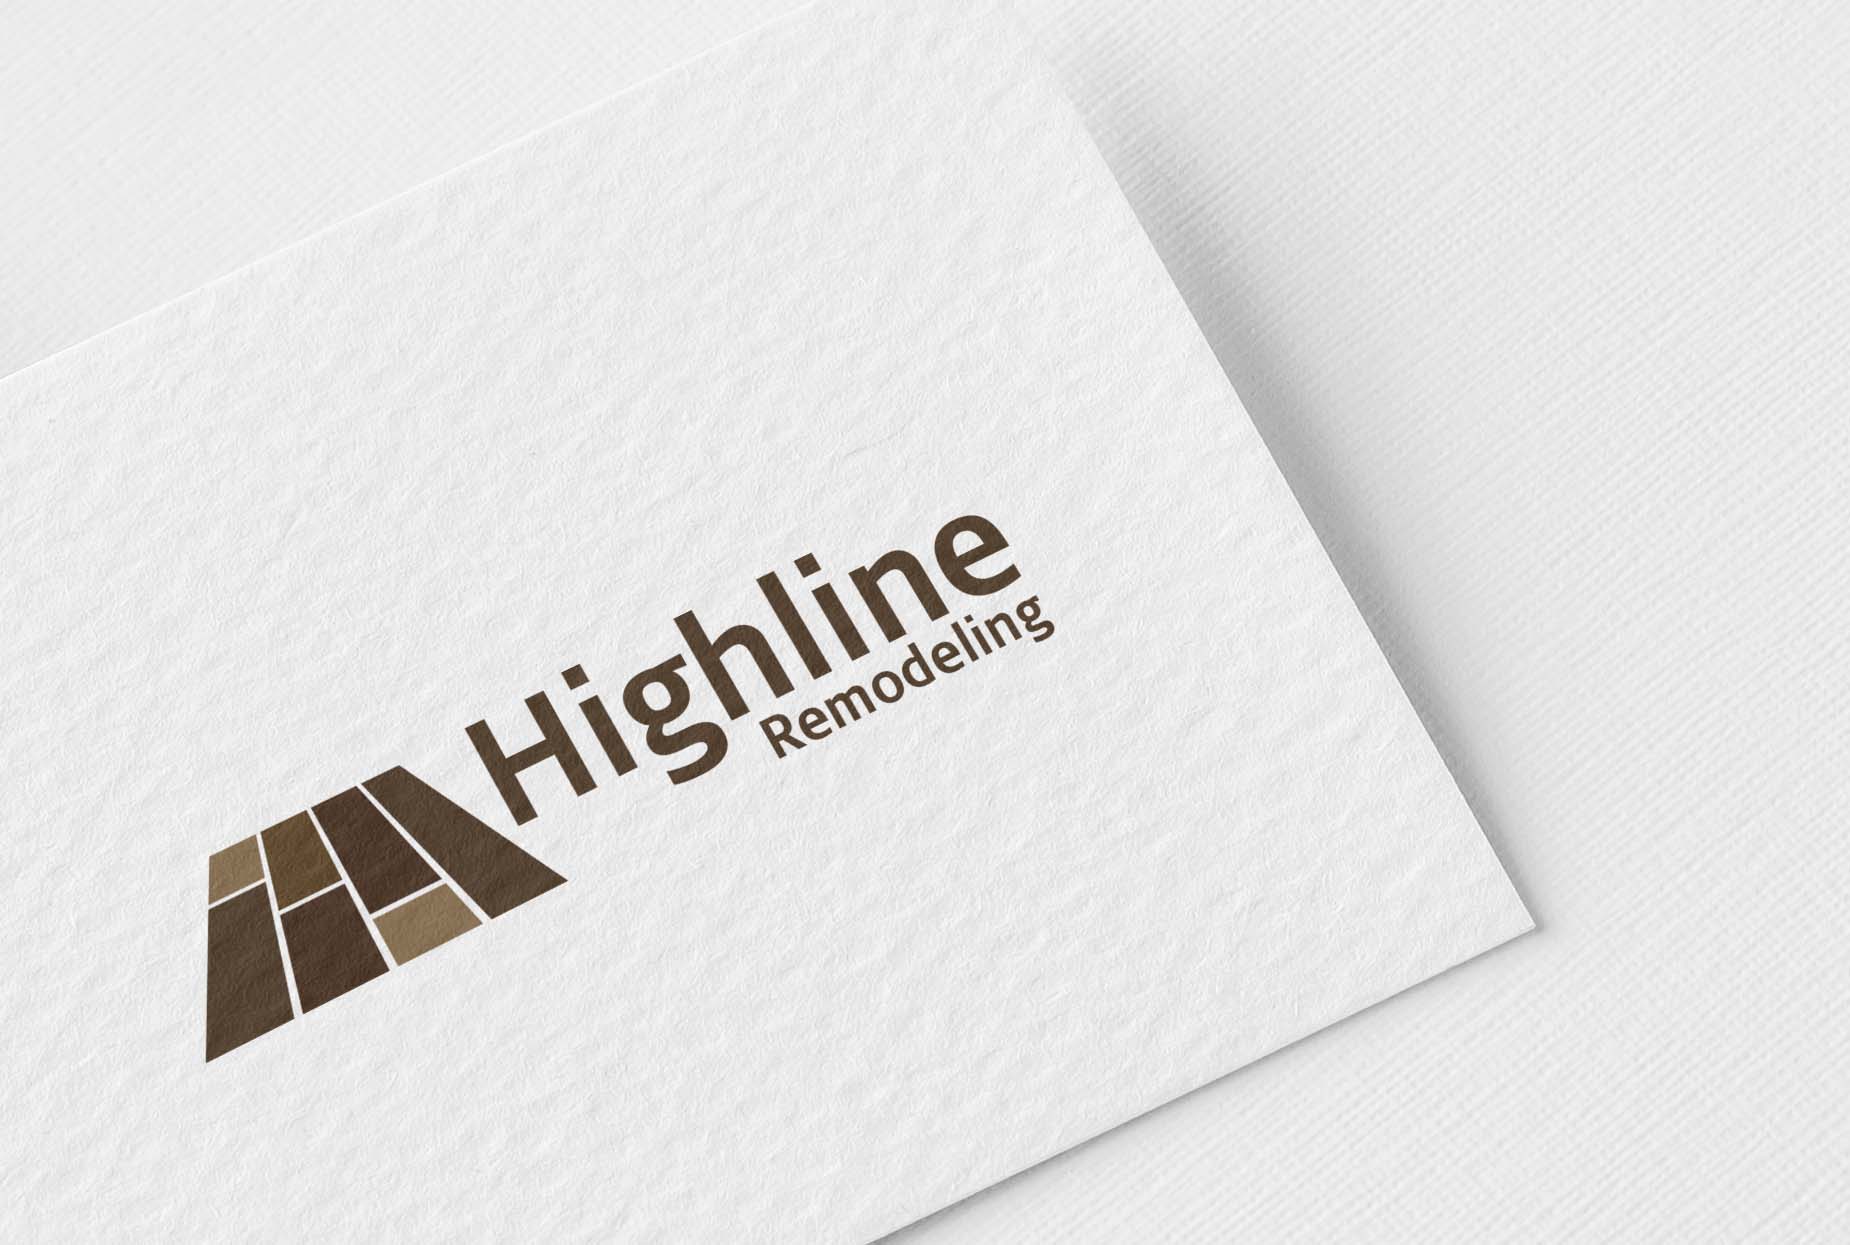 Highline Remodeling Logo